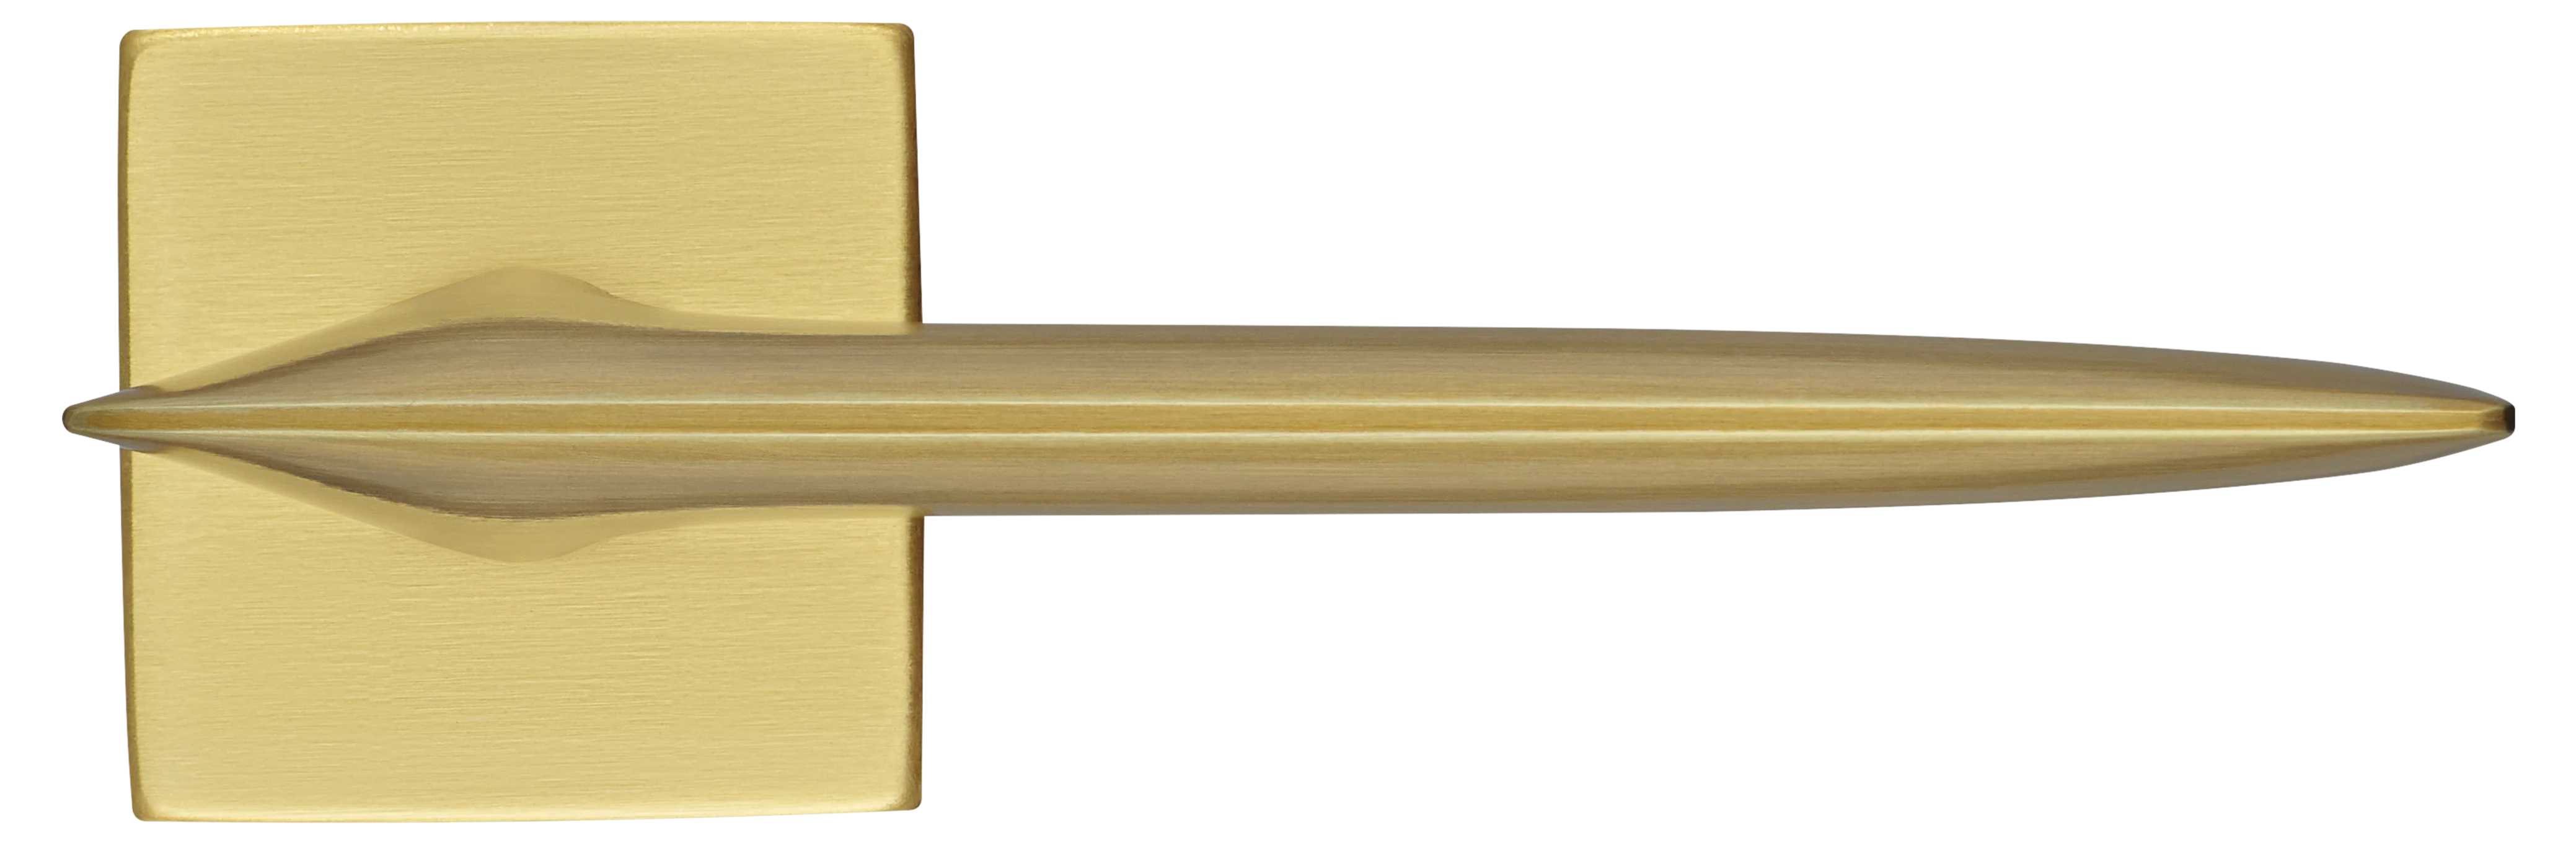 GALACTIC S5 OSA, ручка дверная, цвет -  матовое золото фото купить в Калининграде